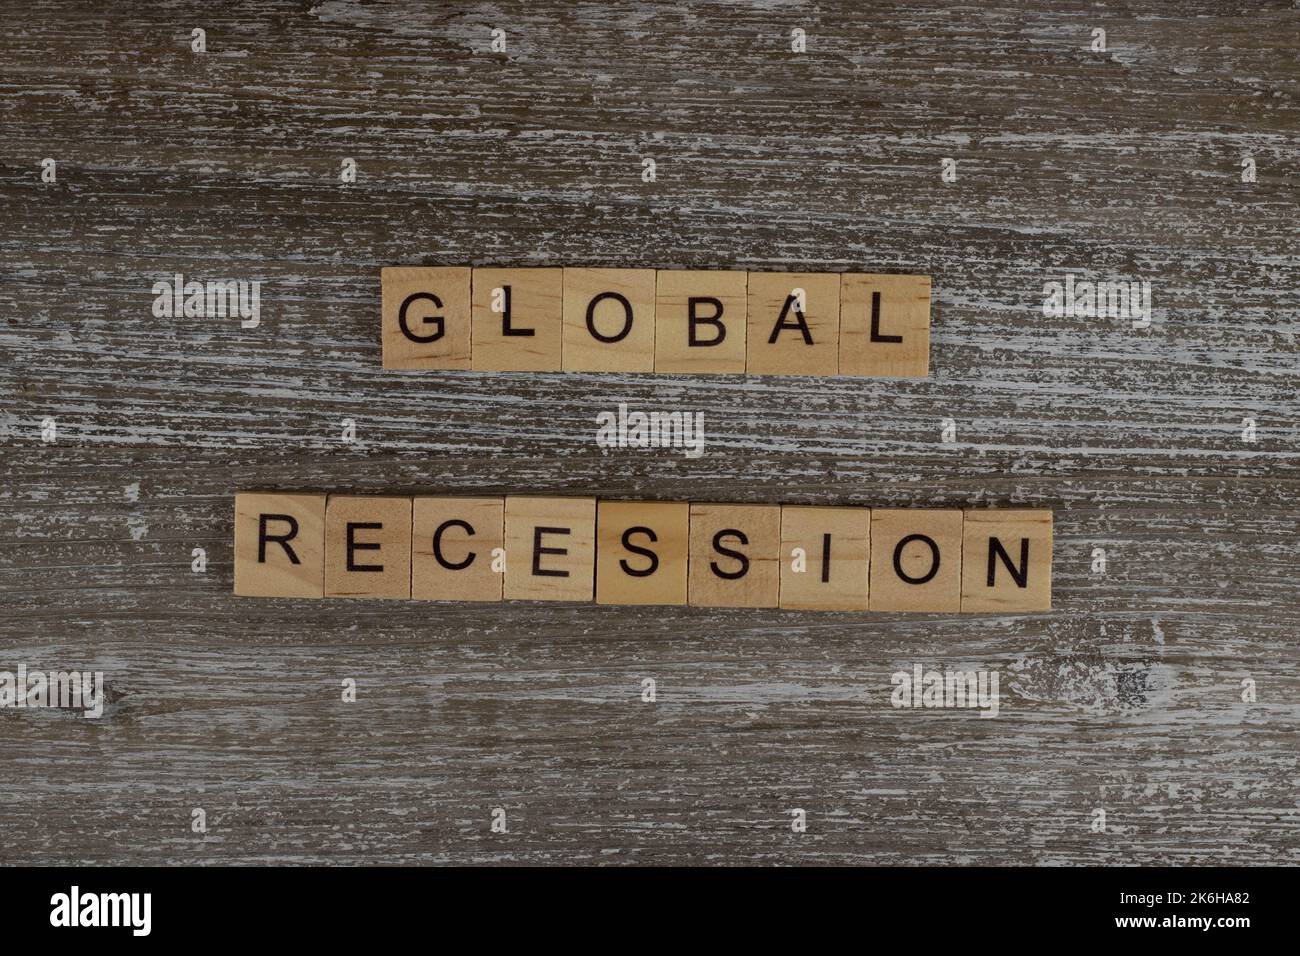 Recesión global deletreada en letras de madera en un fondo de madera, palabras financieras de madera tipografía concepto de letras Foto de stock